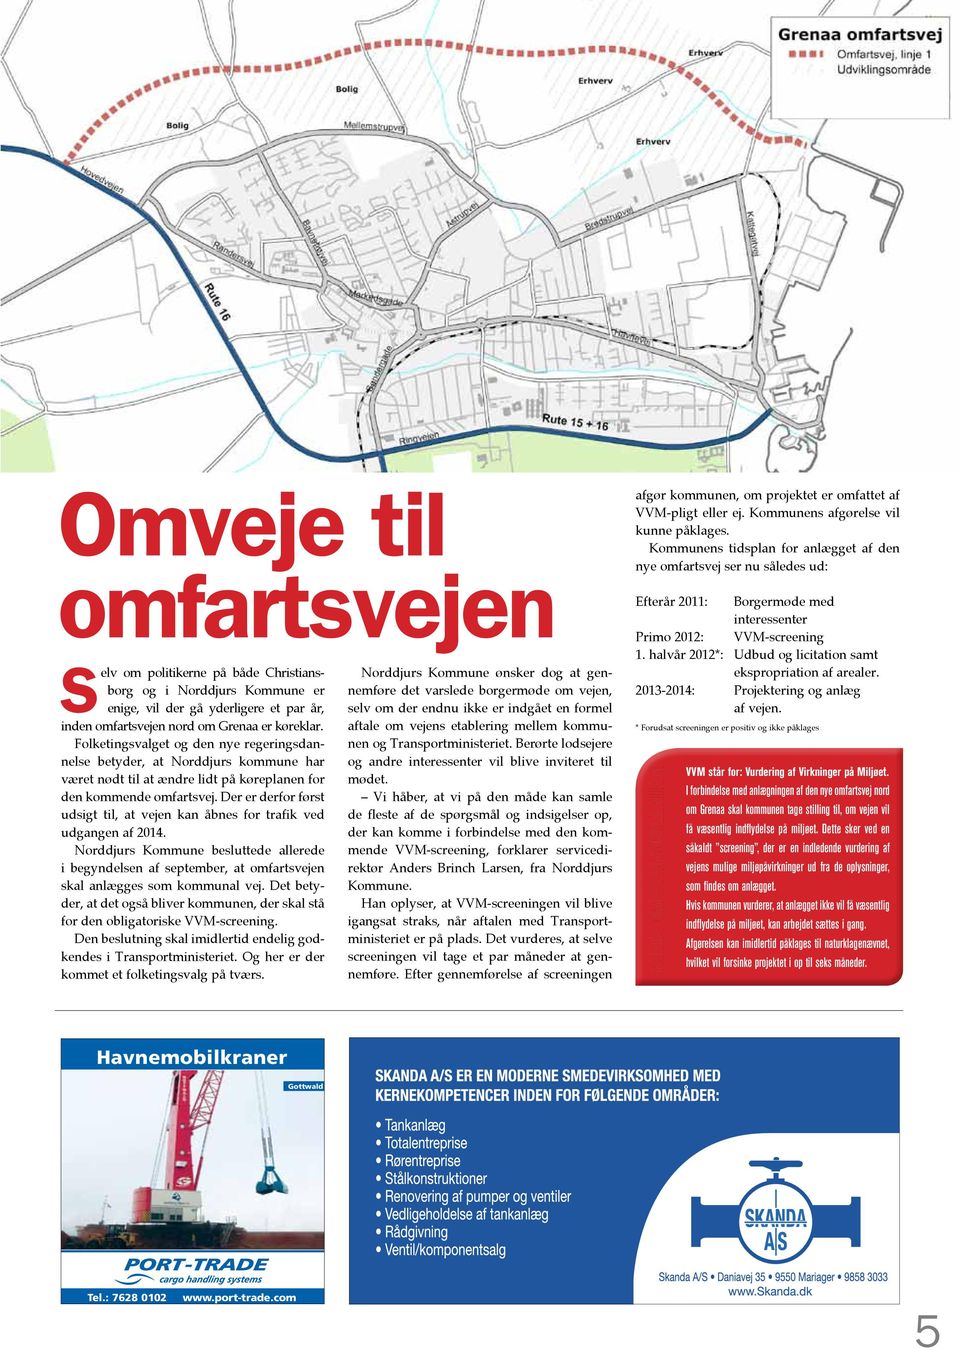 Der er derfor først udsigt til, at vejen kan åbnes for trafik ved udgangen af 2014. Norddjurs Kommune besluttede allerede i begyndelsen af september, at omfartsvejen skal anlægges som kommunal vej.